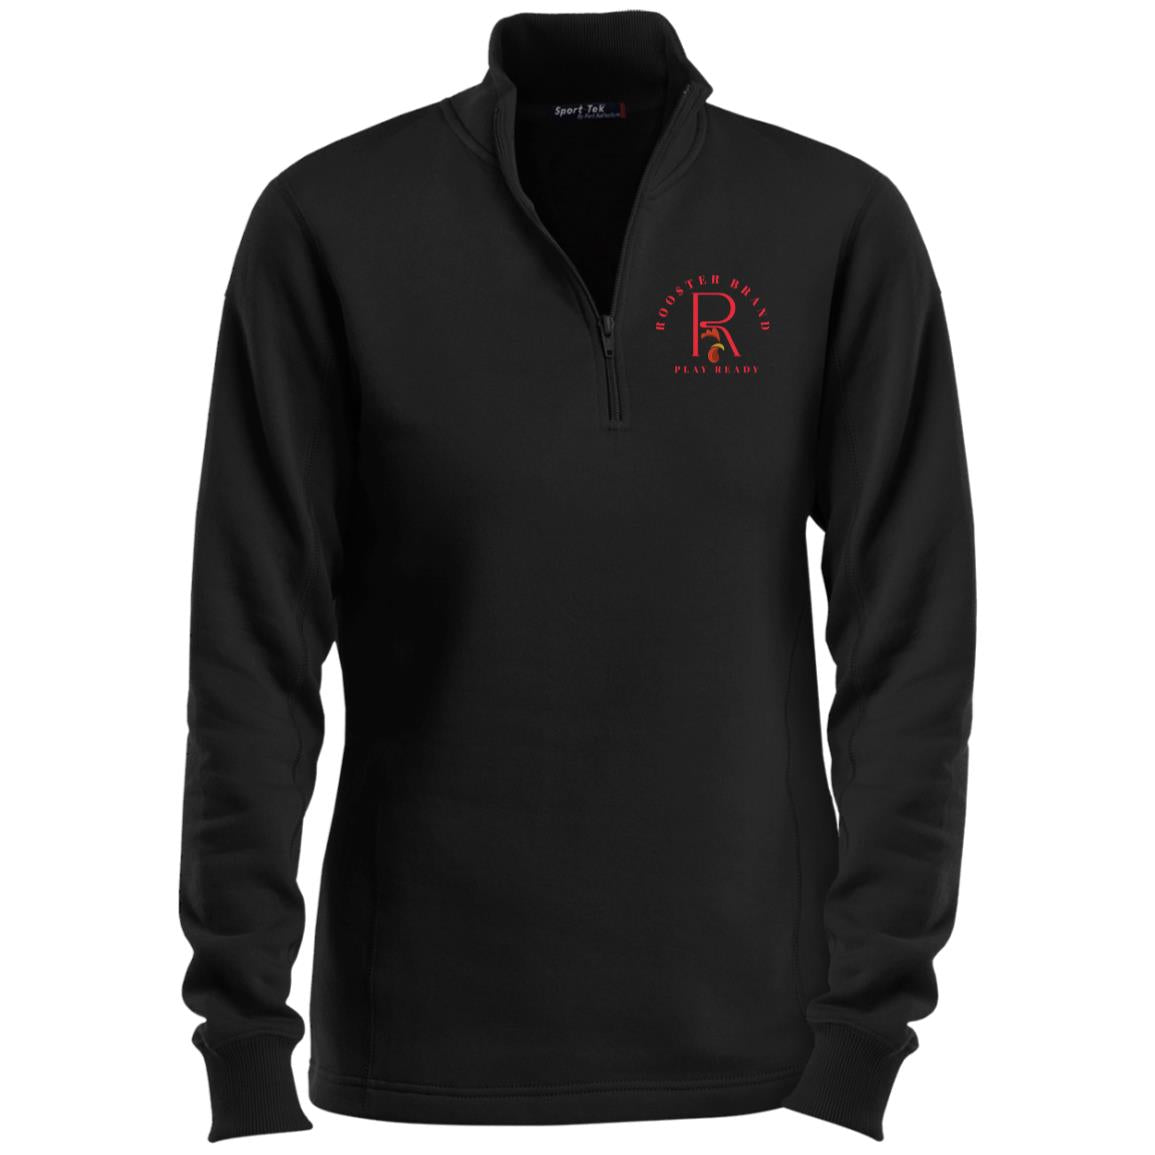 Roo$ter Brand Ladies 1/4 Zip Sweatshirt